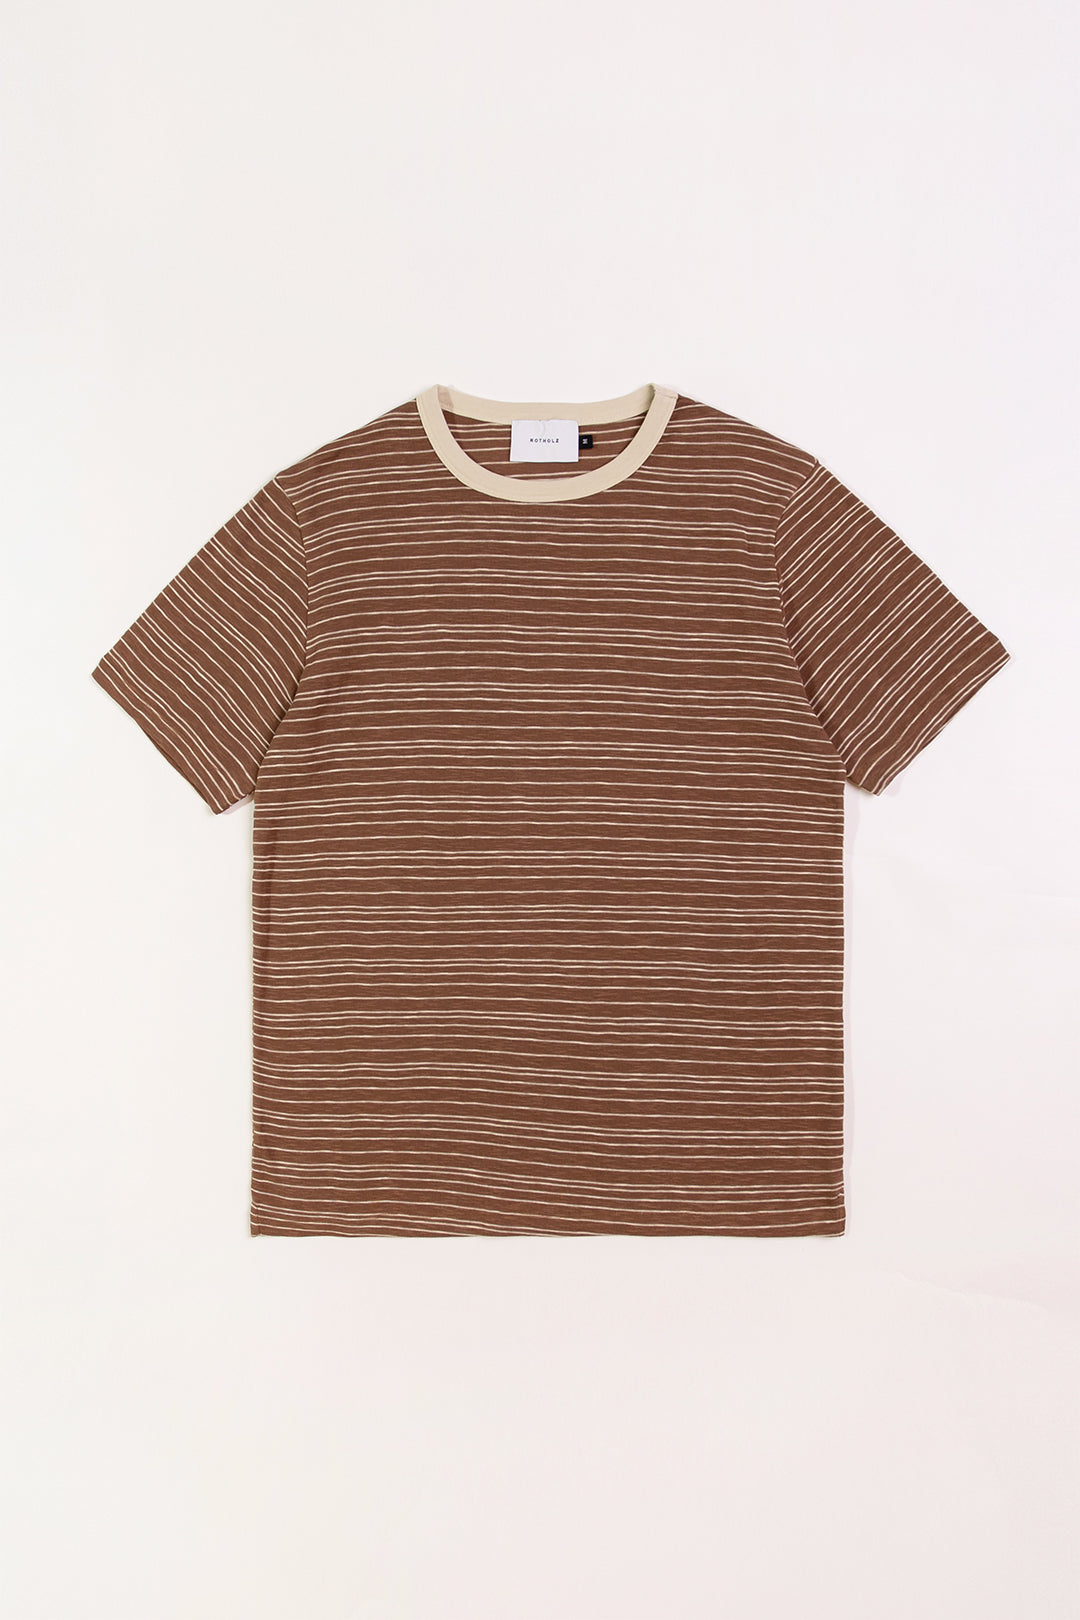 Braunes, gestreiftes T-Shirt aus 100% Bio-Baumwolle von Rotholz